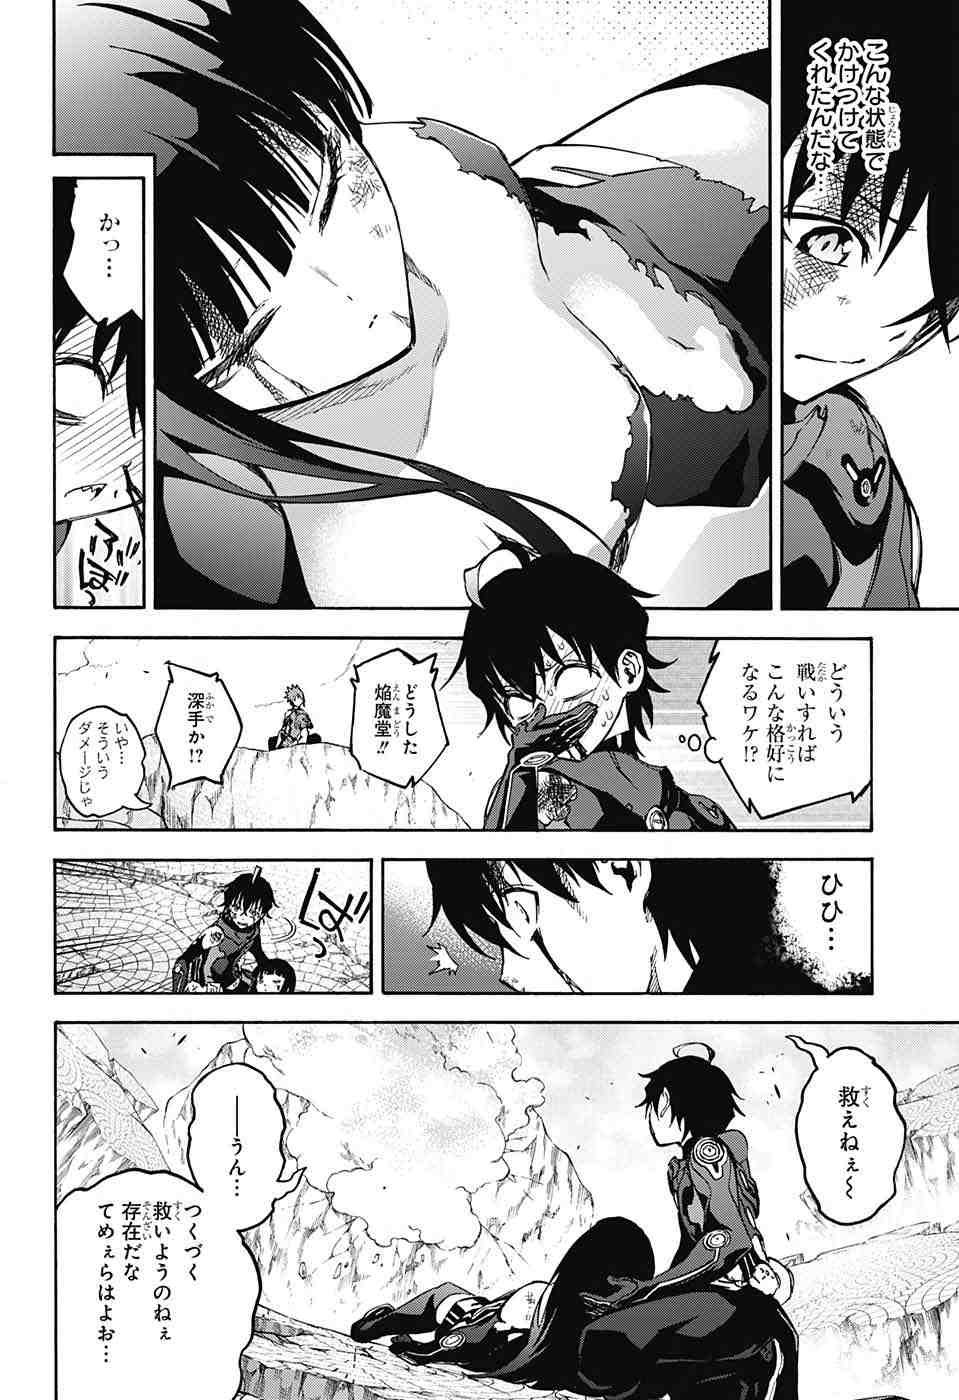 Sousei no Onmyouji - Chapter 32 - Page 3